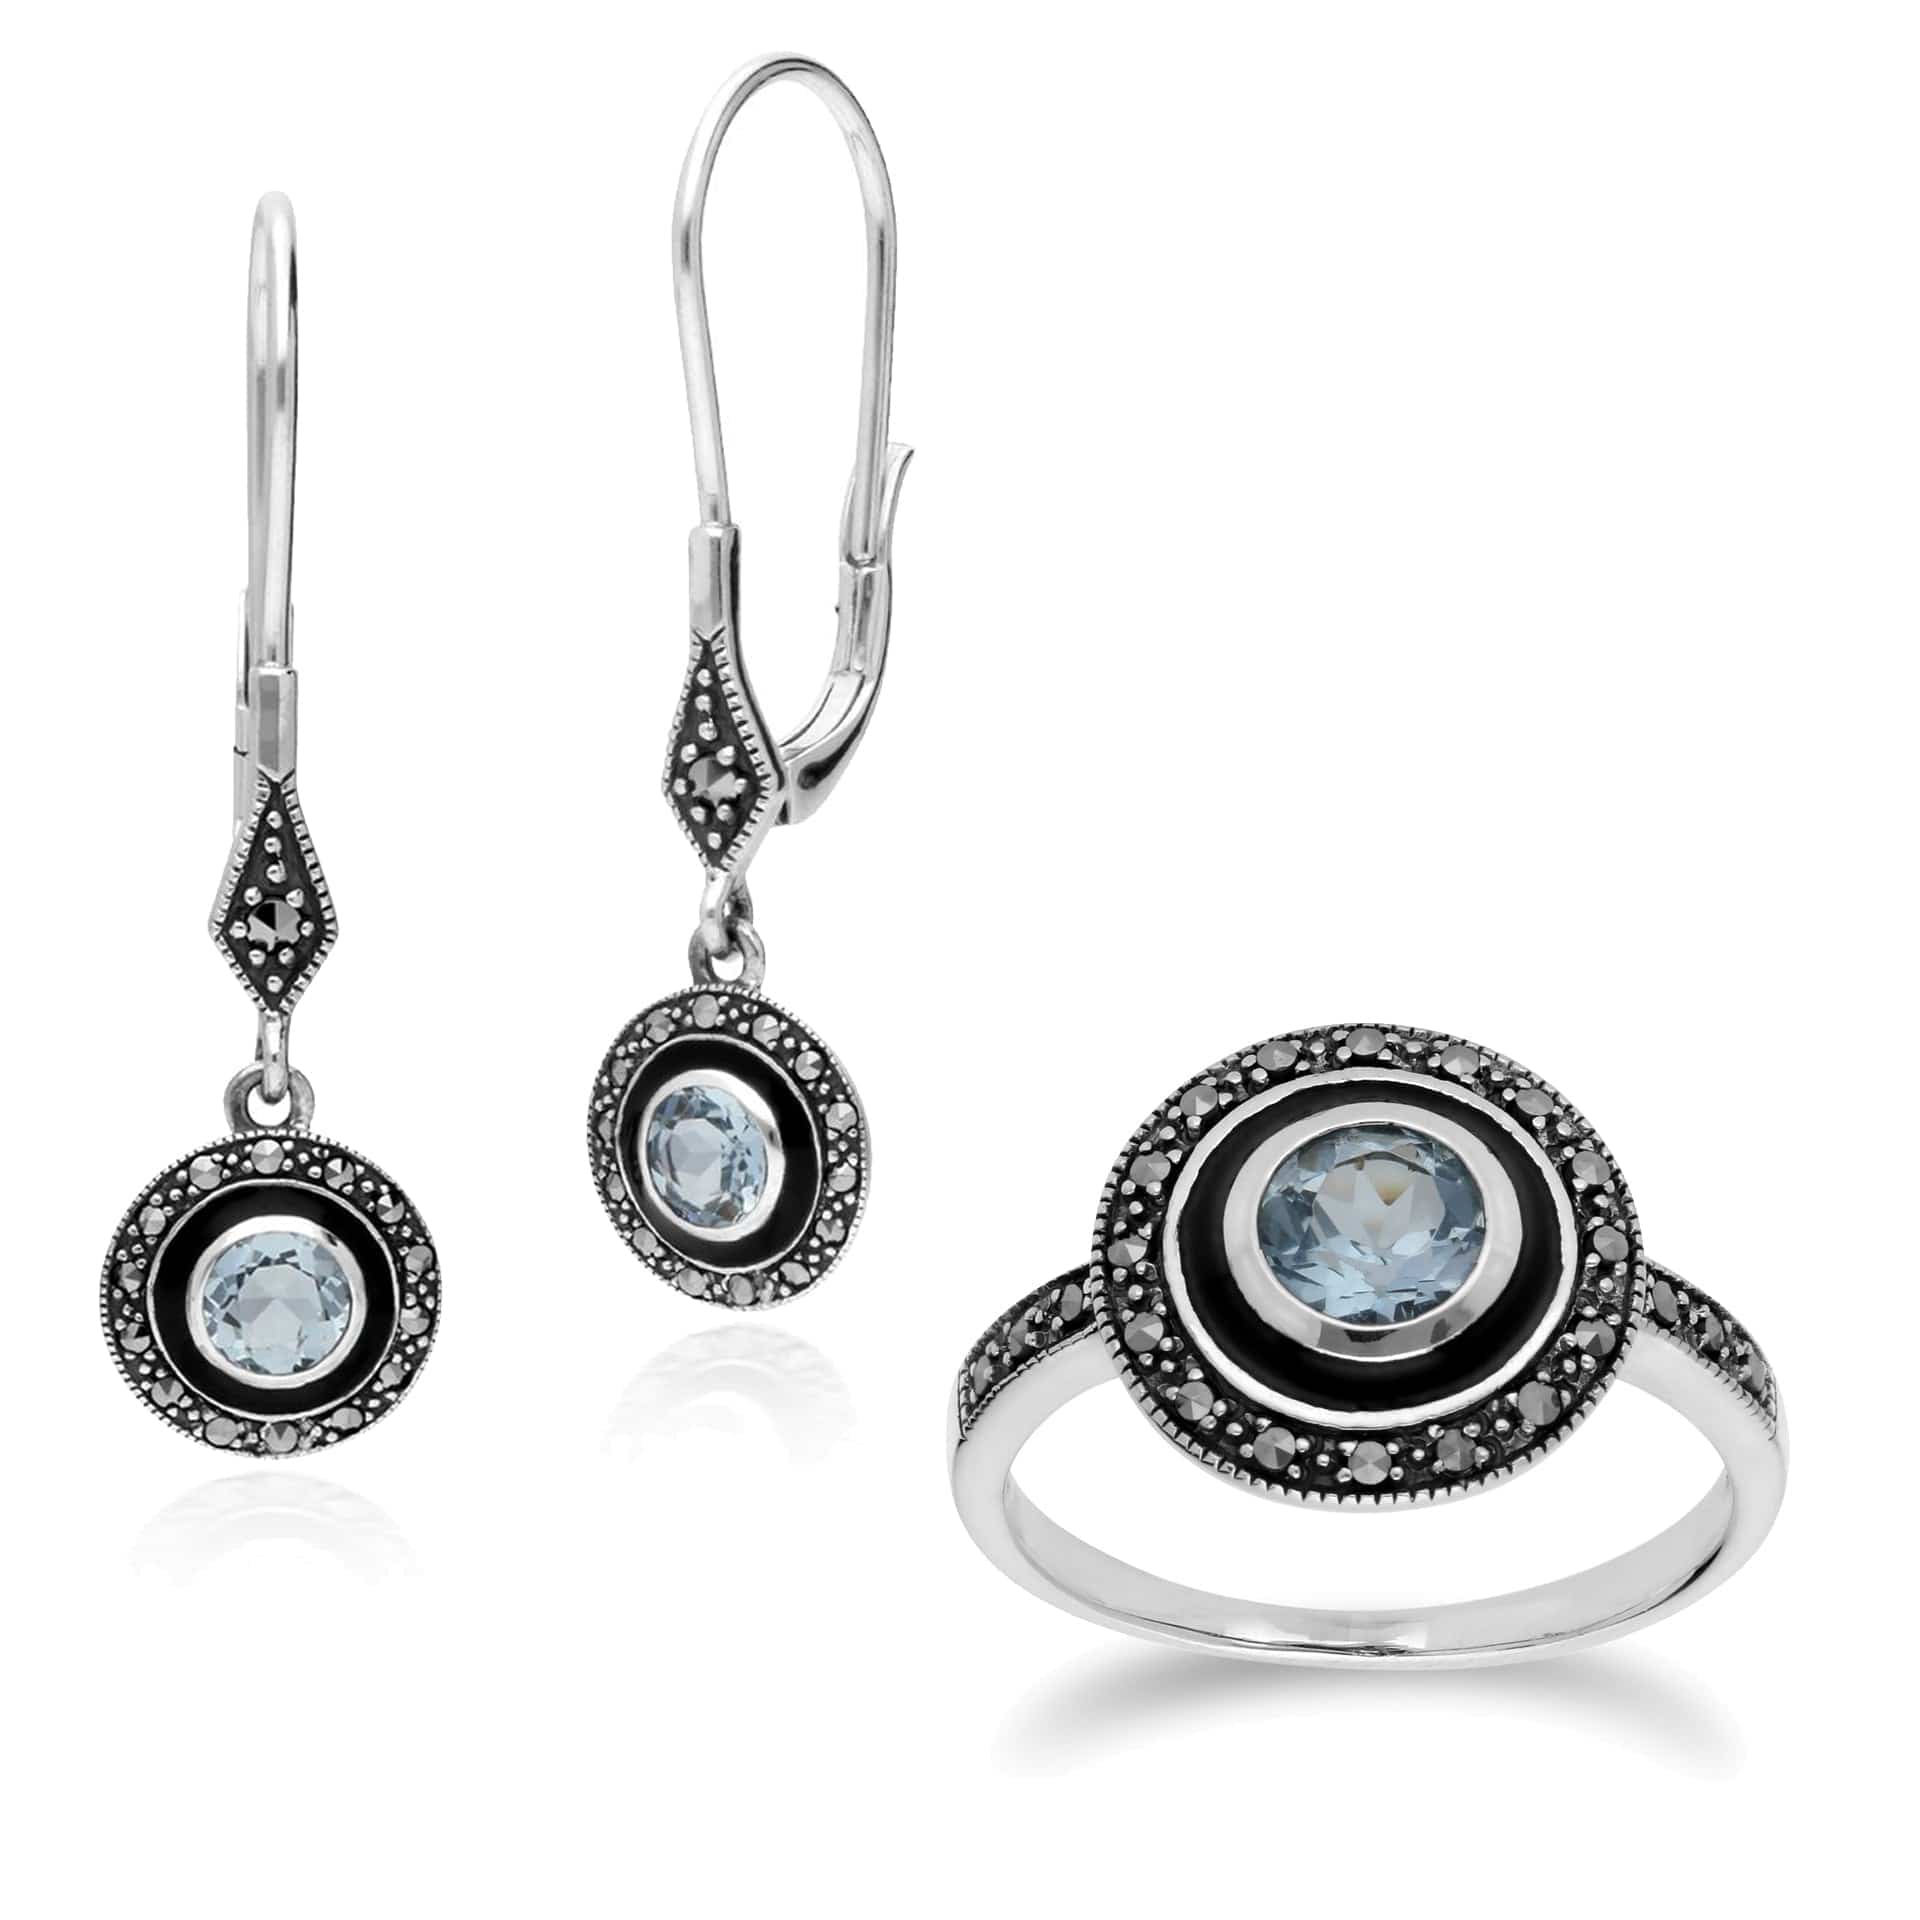 214E860701925-214R599601925 Art Deco Style Round Blue Topaz, Marcasite & Black Enamel Drop Earrings & Ring Set in 925 Sterling Silver 1